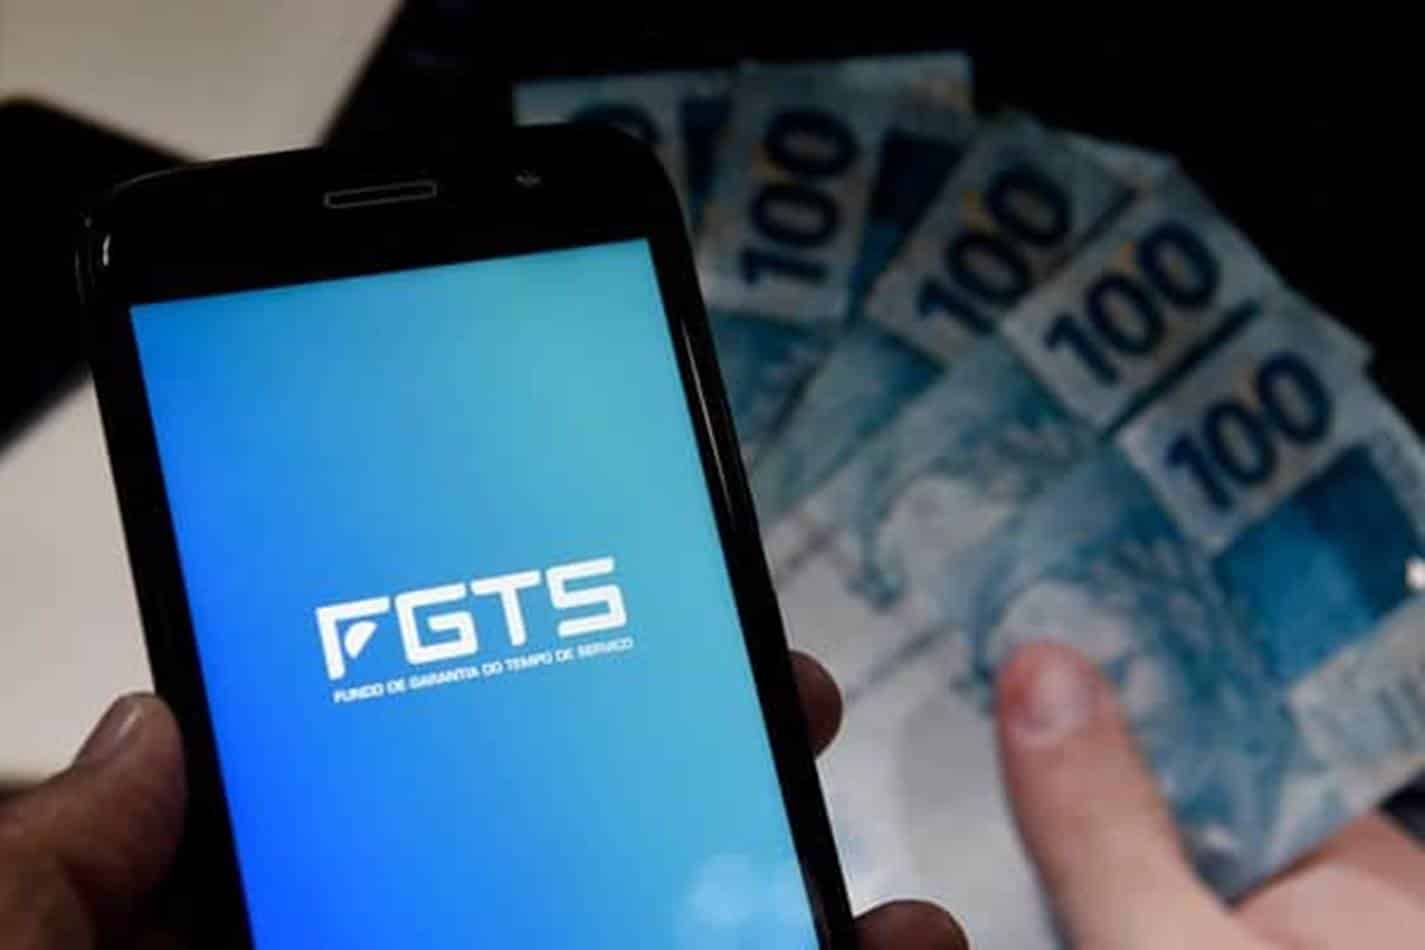 Dinheiro fgts Cuidado com os golpes e fraudes que roubam dinheiro FGTS